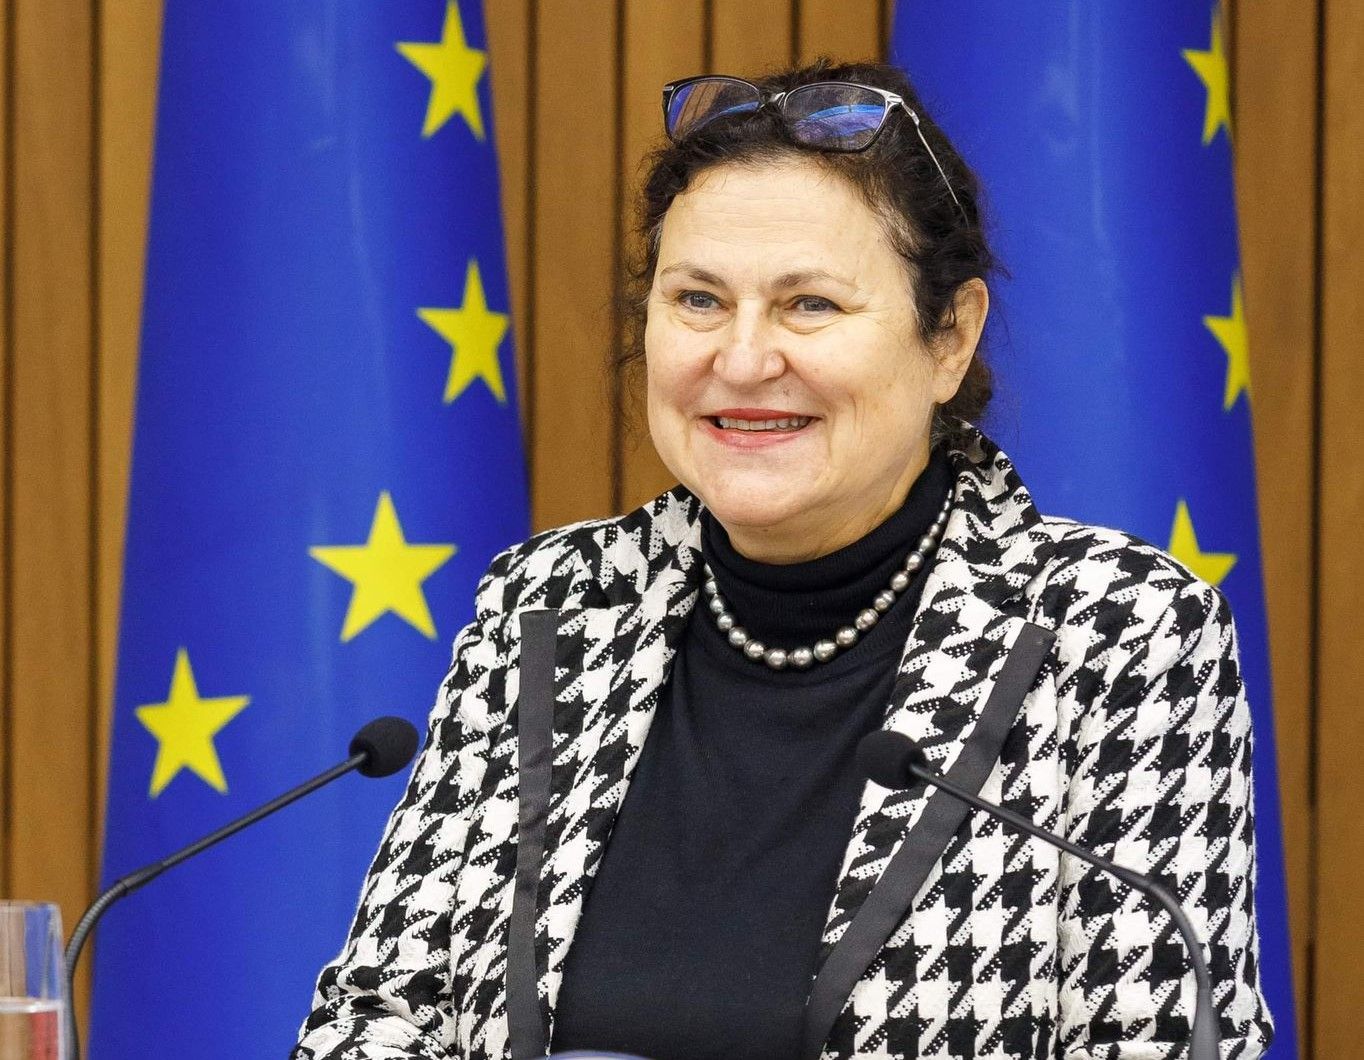 ЄС виділить Україні 50 мільярдів в «обмін» на довгий список вимог – посол ЄС